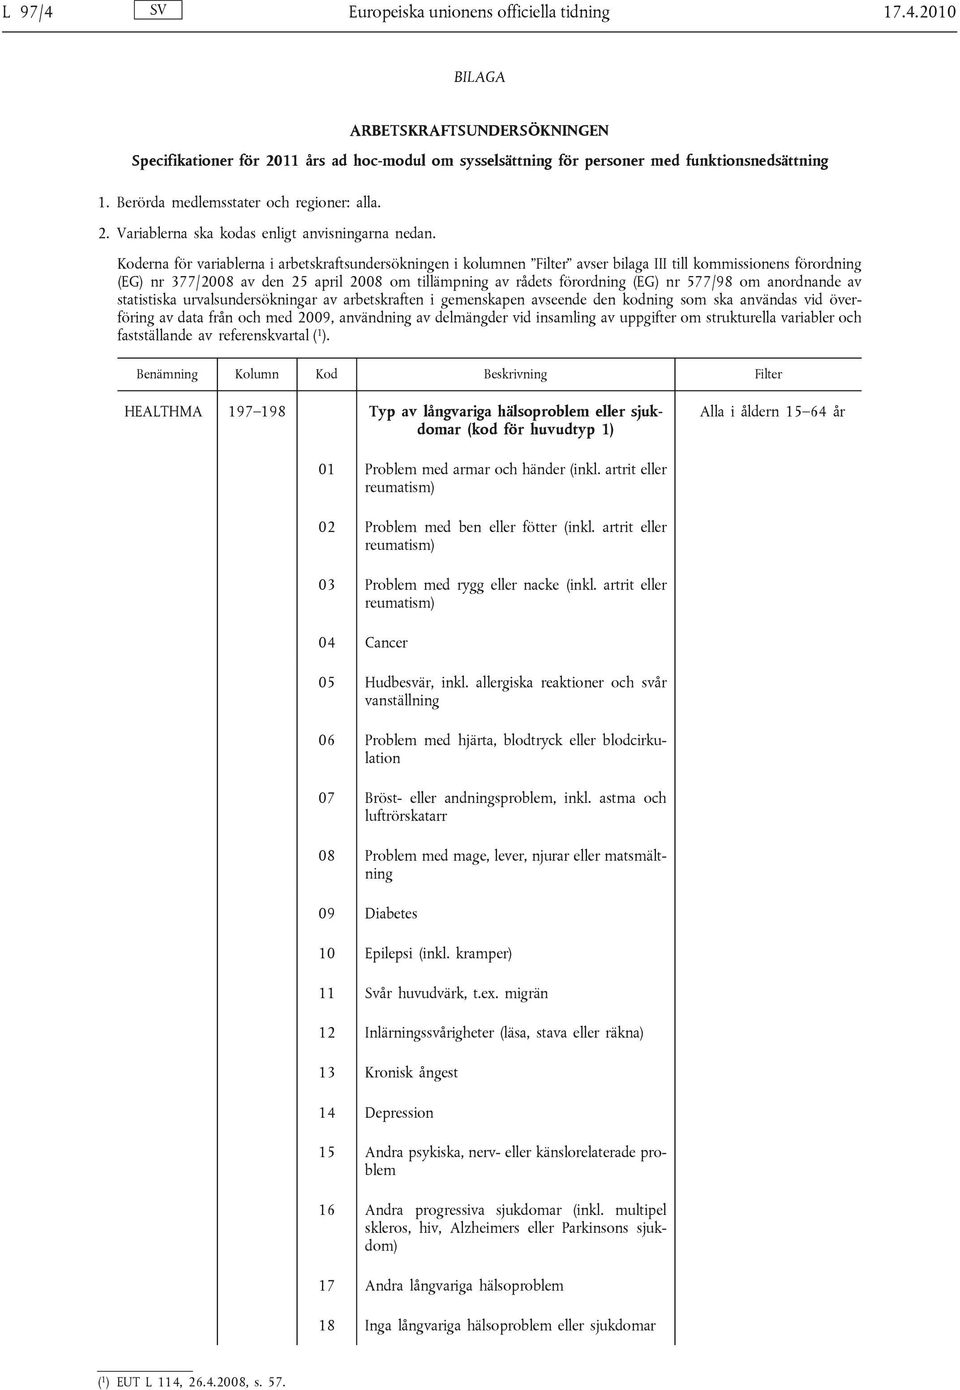 Koderna för variablerna i arbetskraftsundersökningen i kolumnen Filter avser bilaga III till kommissionens förordning (EG) nr 377/2008 av den 25 april 2008 om tillämpning av rådets förordning (EG) nr